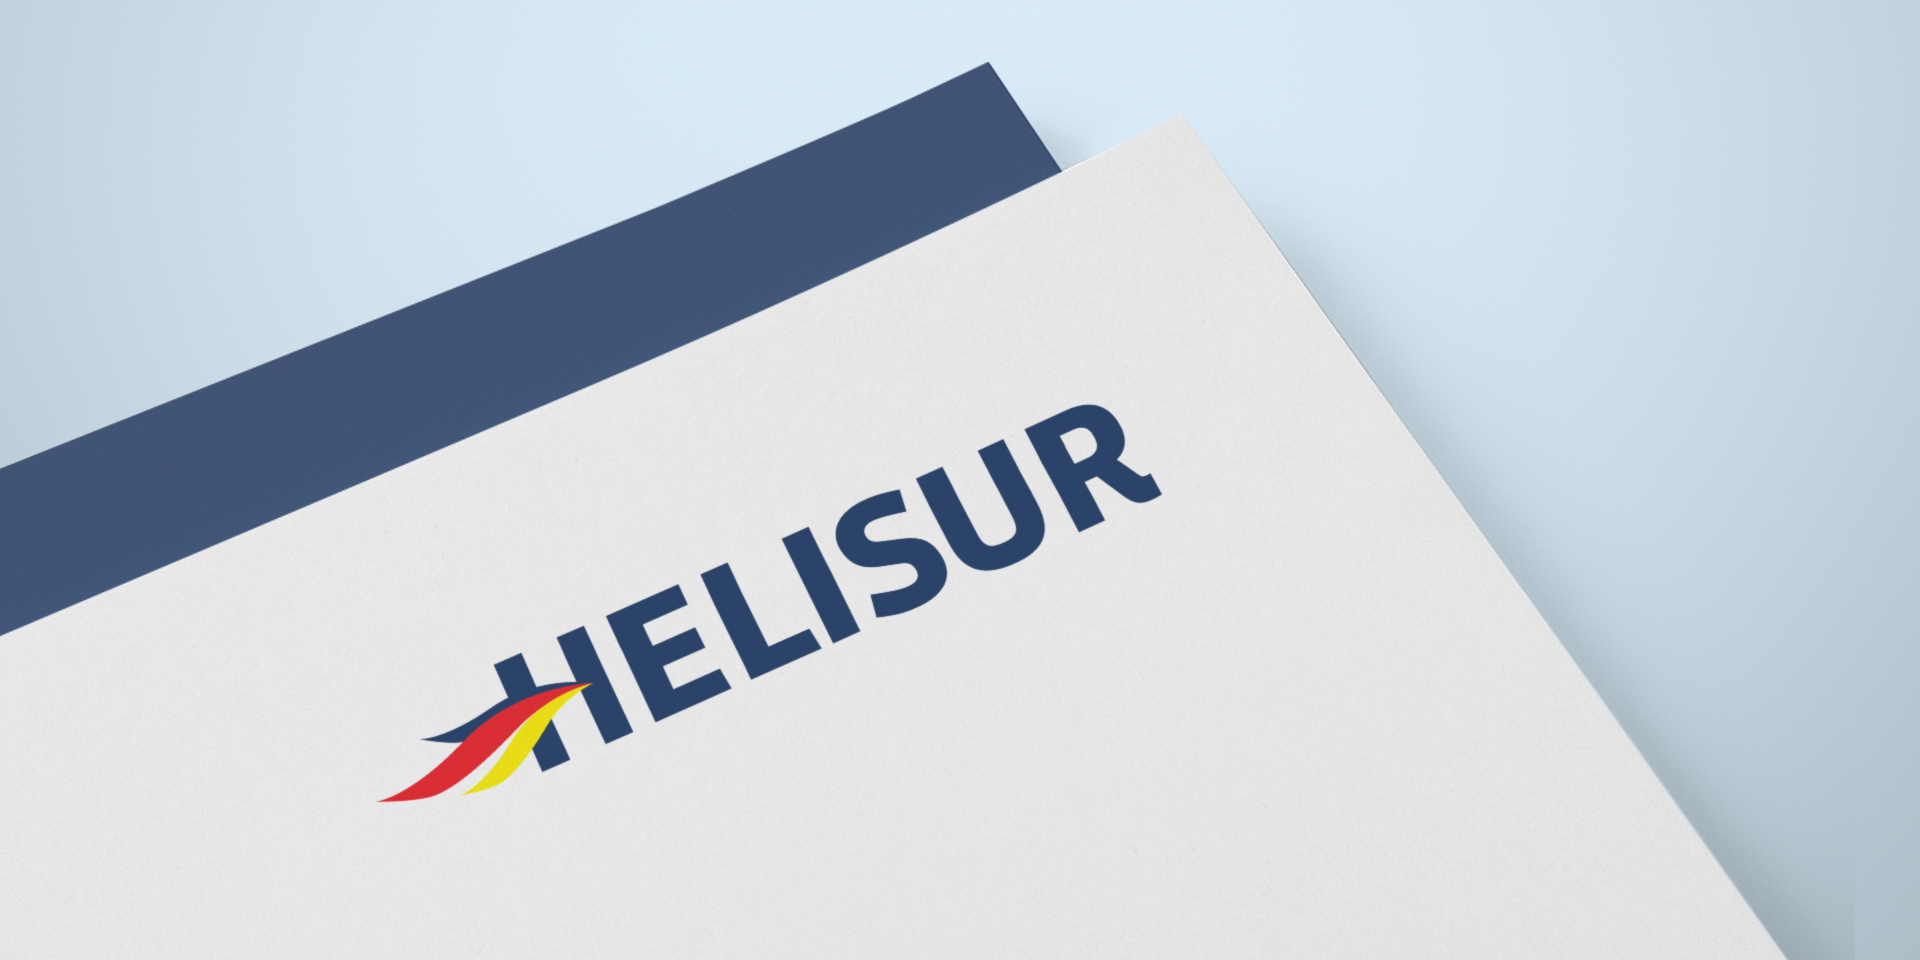 Helisur-rotulo